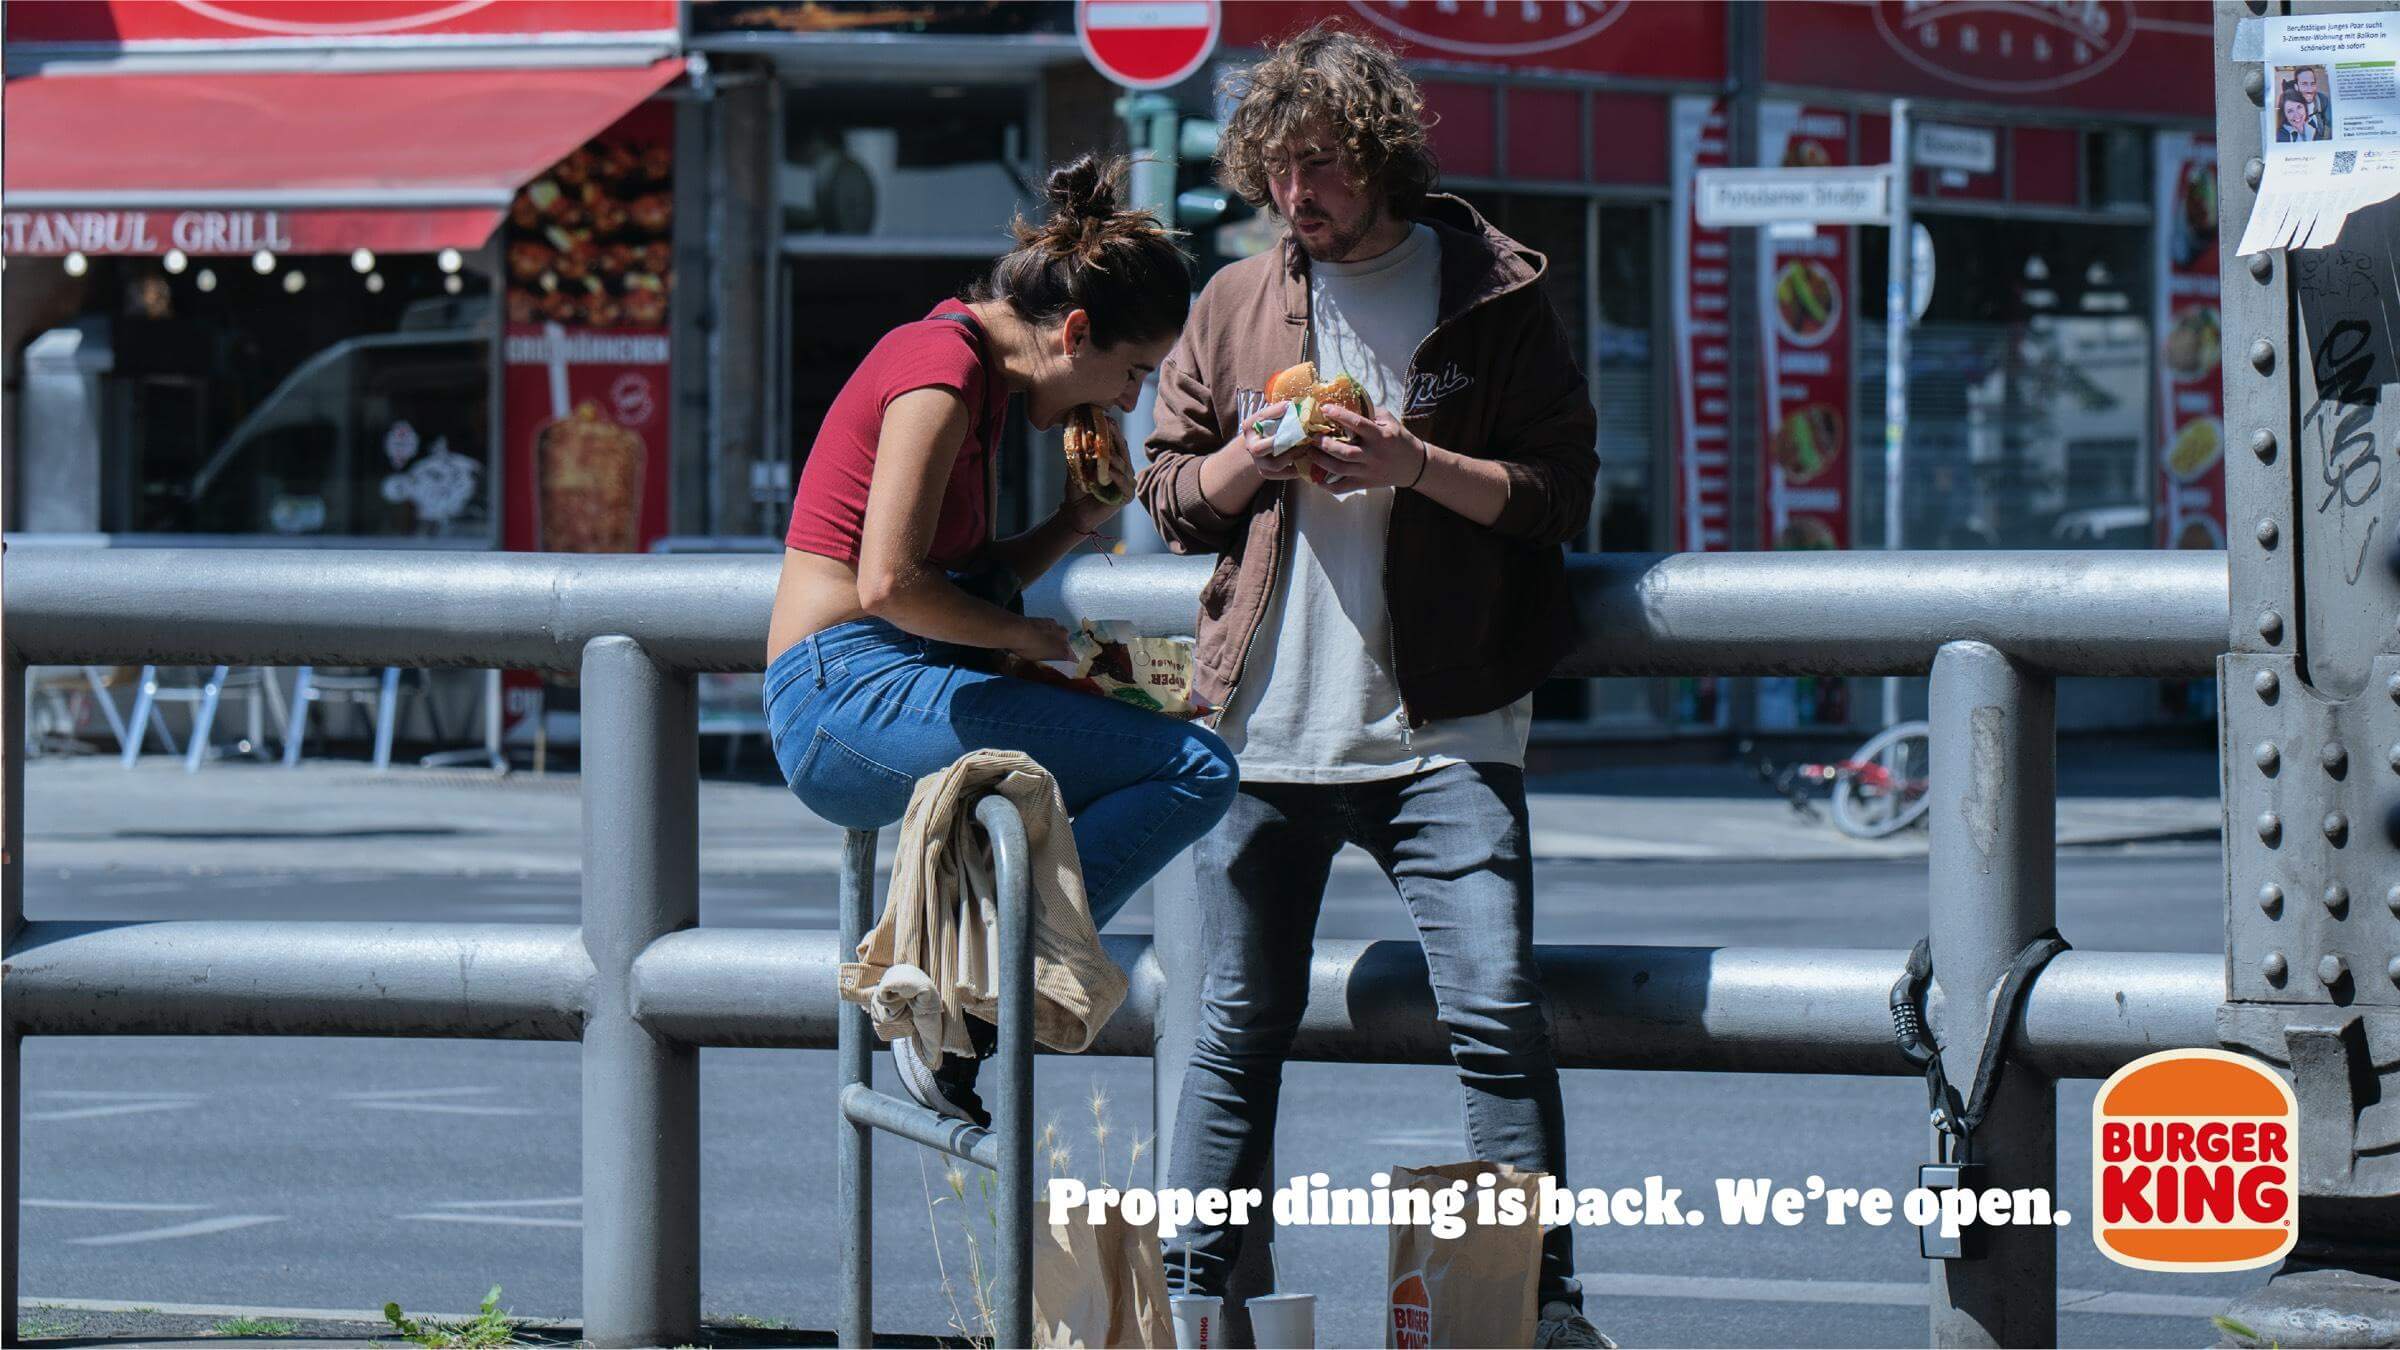 Burger King: Proper dining is back